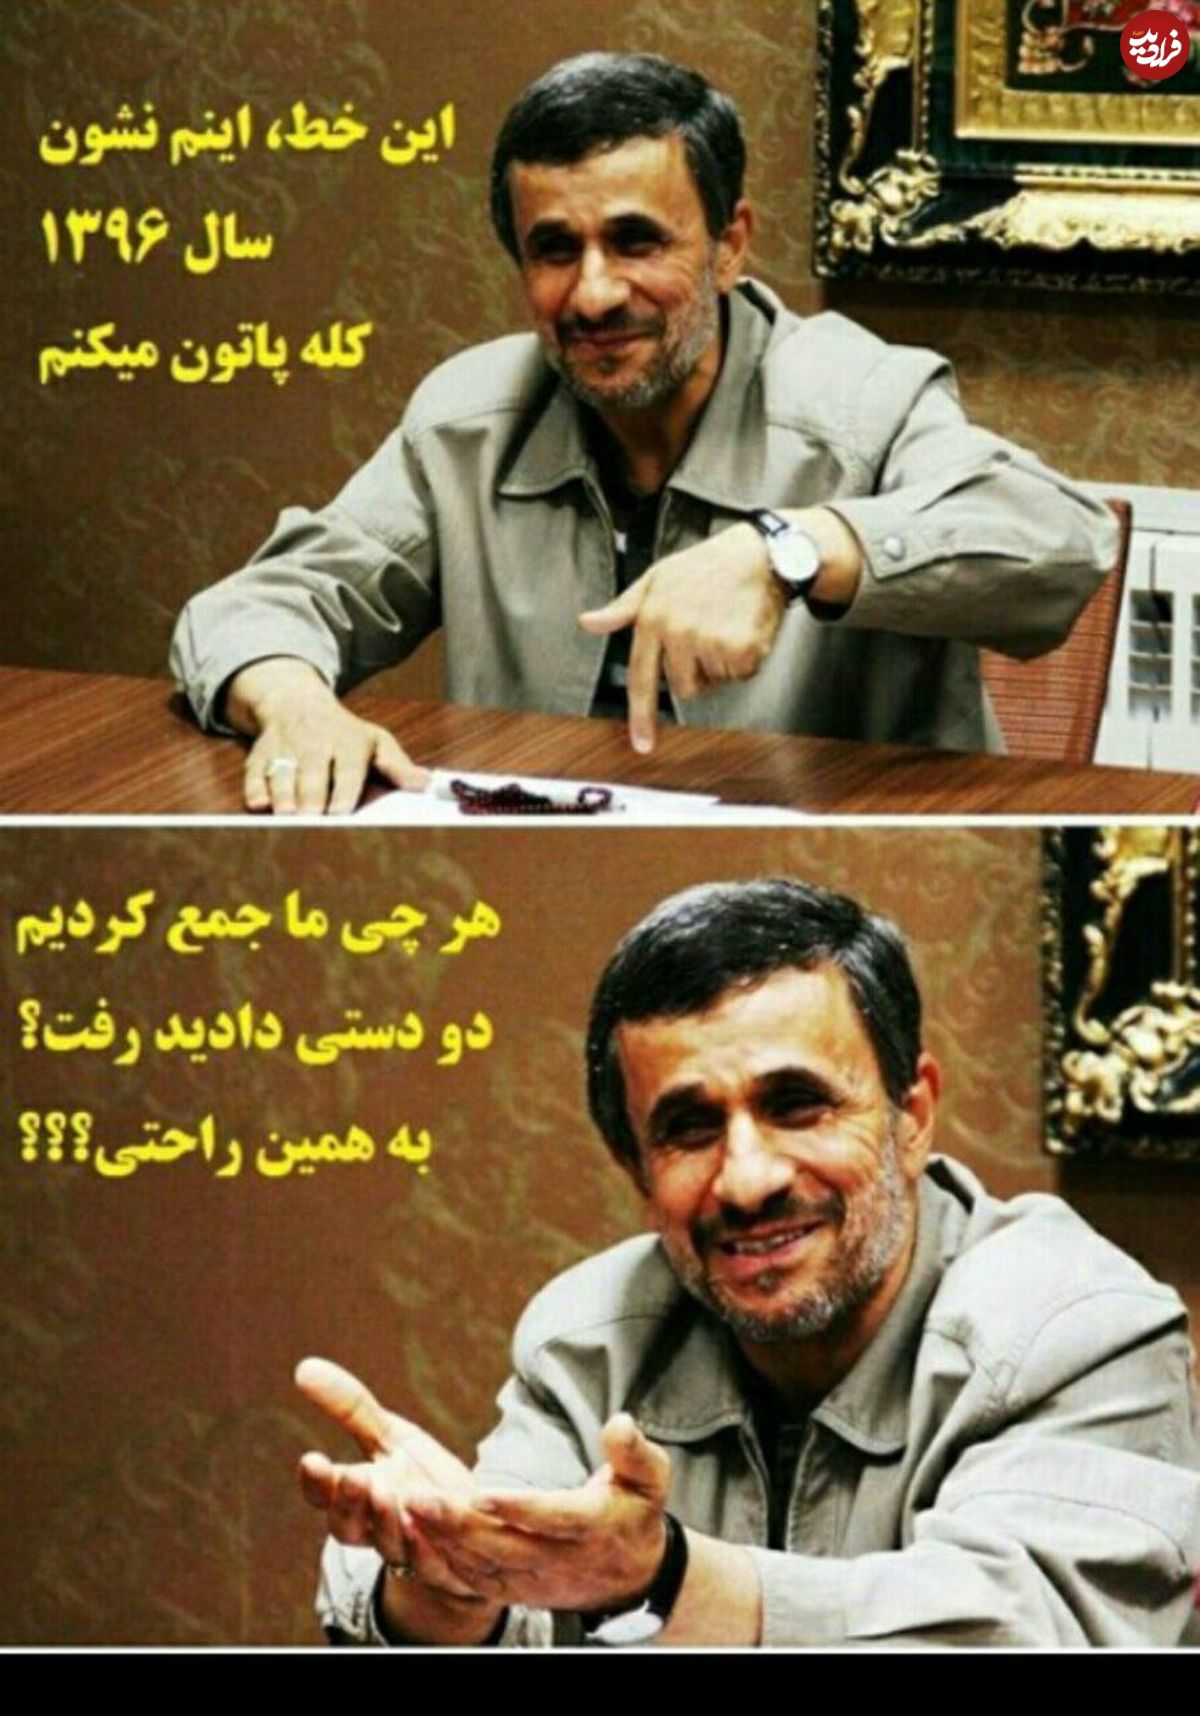 پوستری که حامیان احمدی‌نژاد منتشر کردند